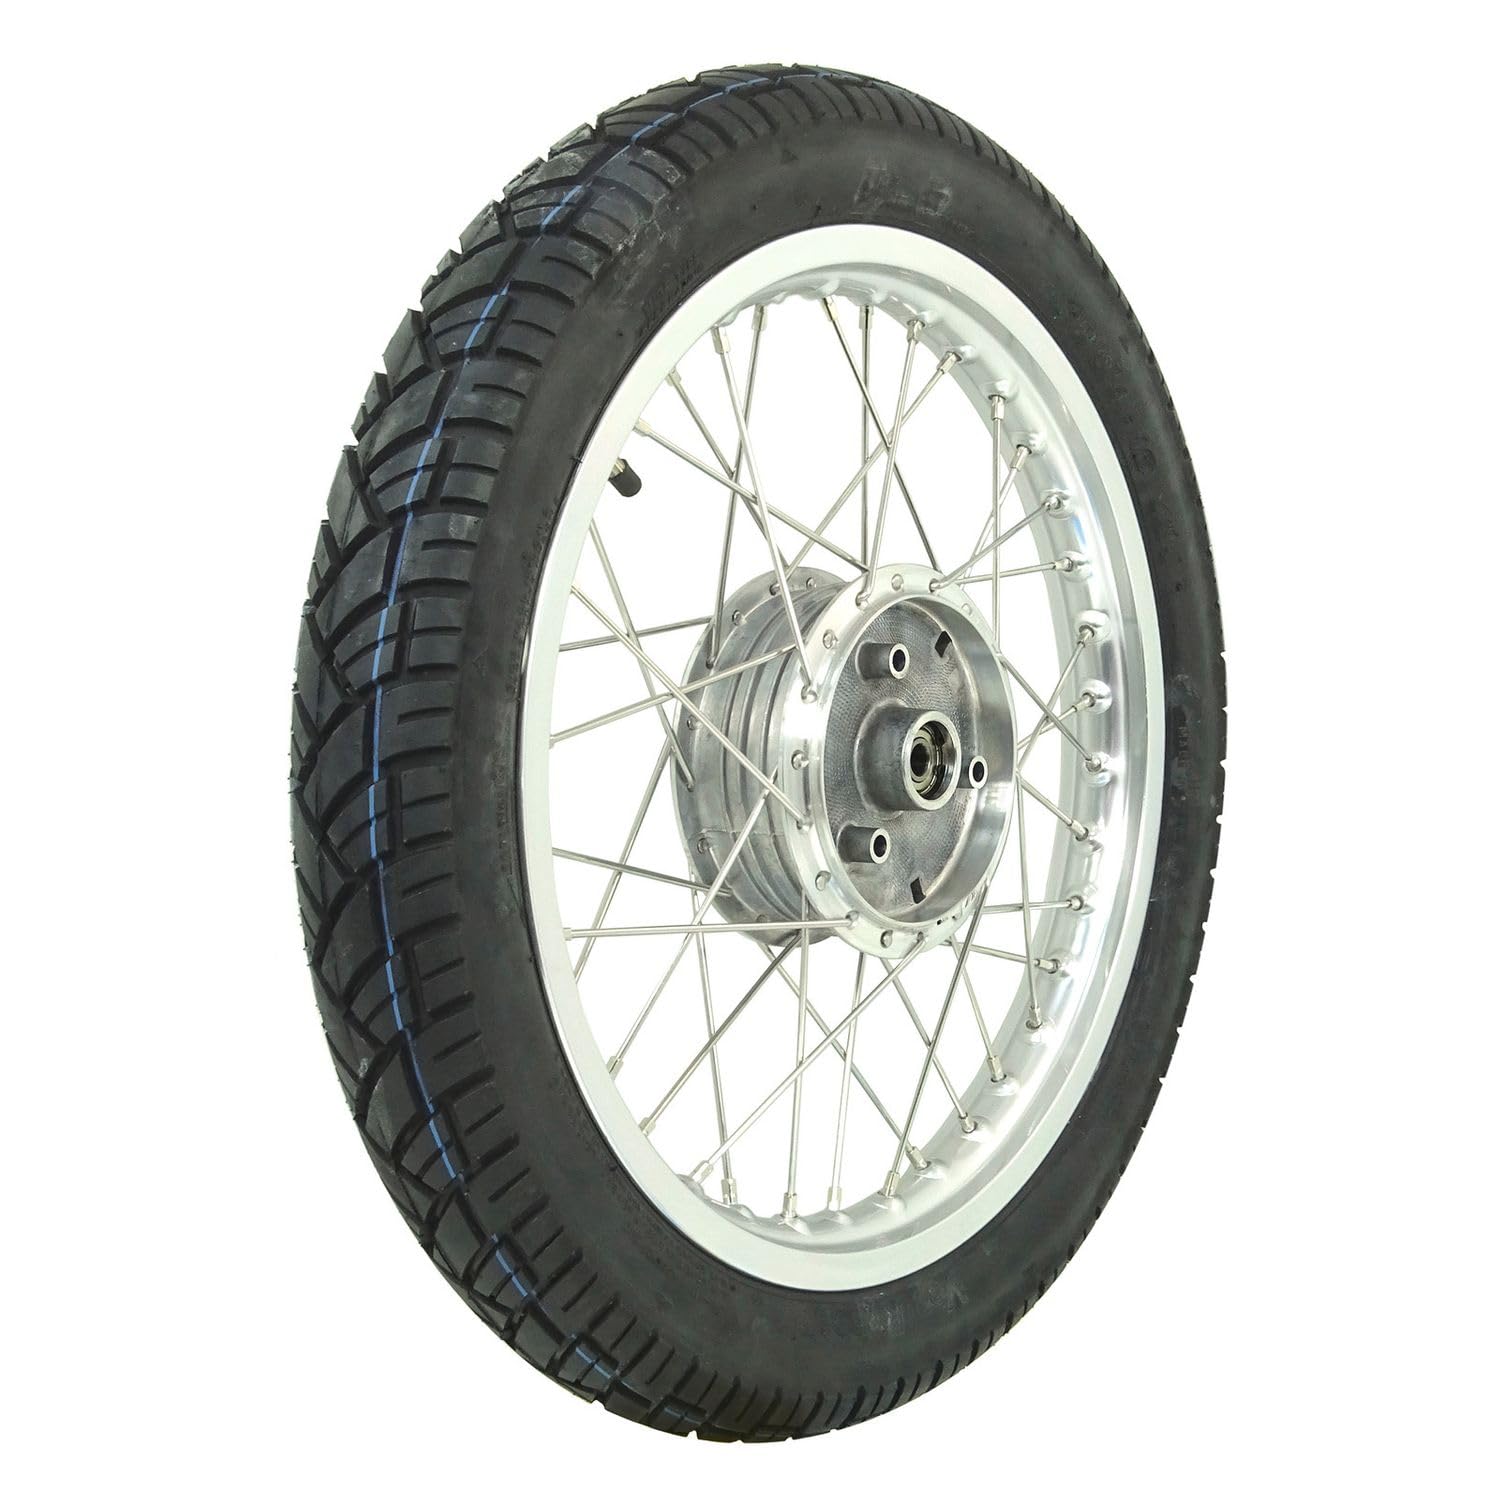 Komplettrad - Vorne - 1,5x16 Zoll - Alufelge poliert, Edelstahlspeichen, mit Vee Rubber-Reifen VRM094 montiert